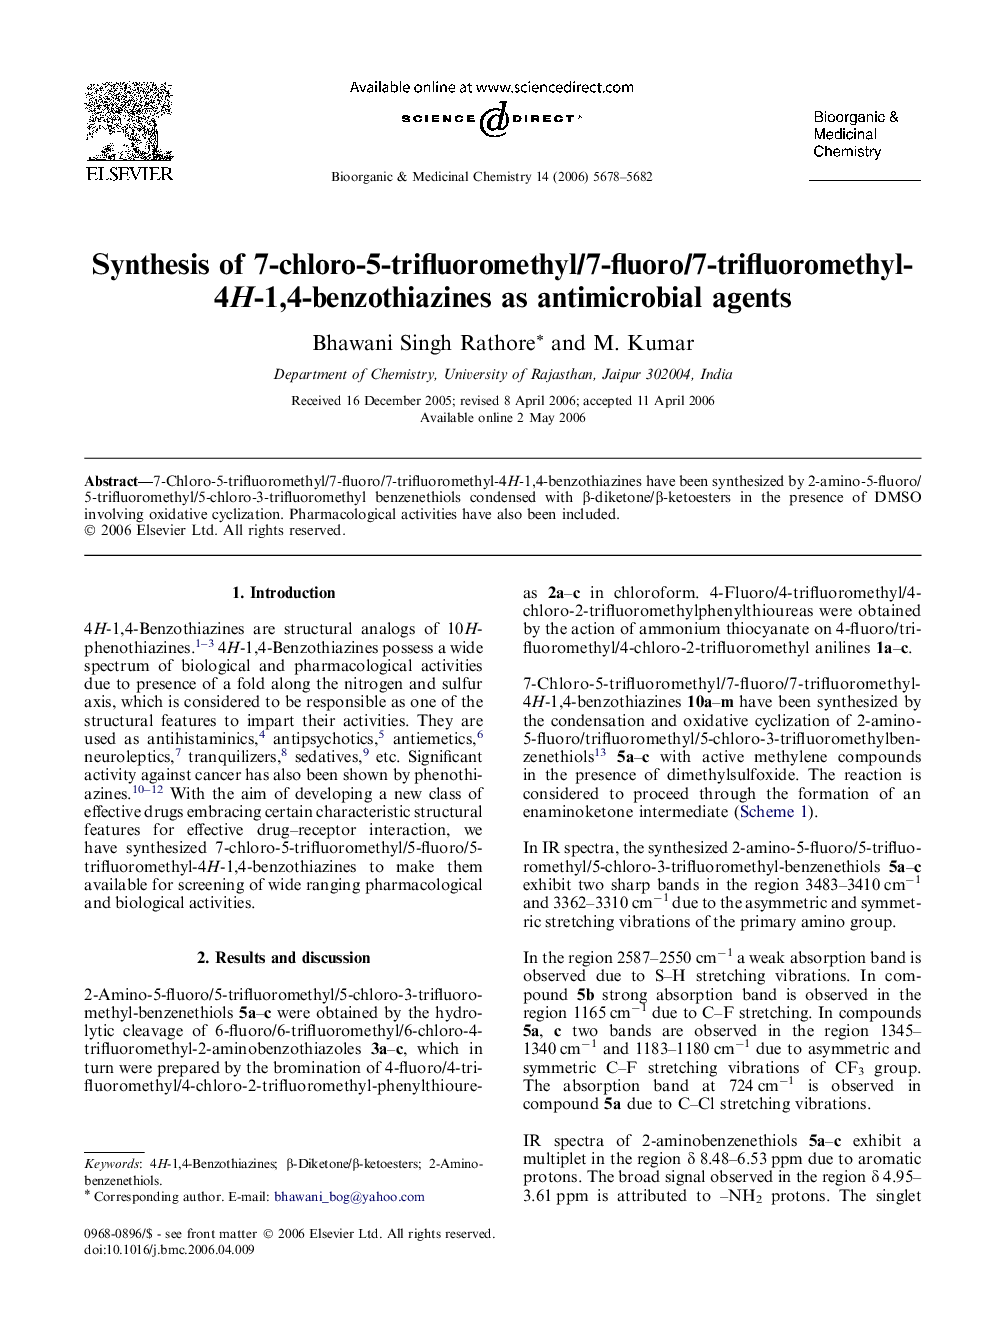 Synthesis of 7-chloro-5-trifluoromethyl/7-fluoro/7-trifluoromethyl-4H-1,4-benzothiazines as antimicrobial agents